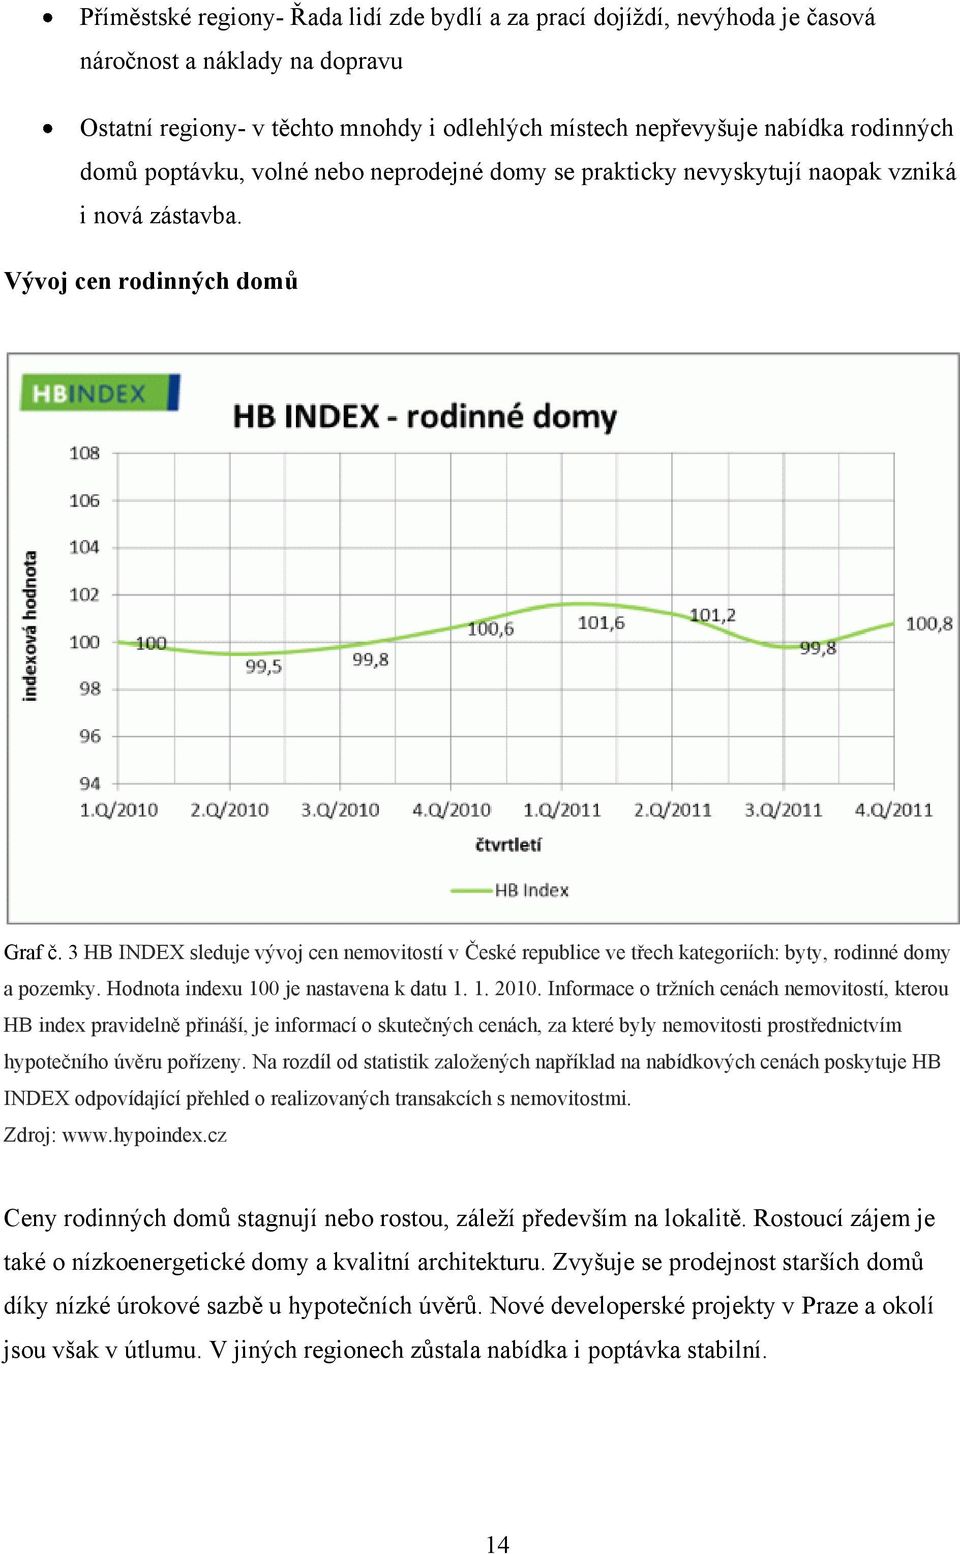 3 HB INDEX sleduje vývoj cen nemovitostí v České republice ve třech kategoriích: byty, rodinné domy a pozemky. Hodnota indexu 100 je nastavena k datu 1. 1. 2010.